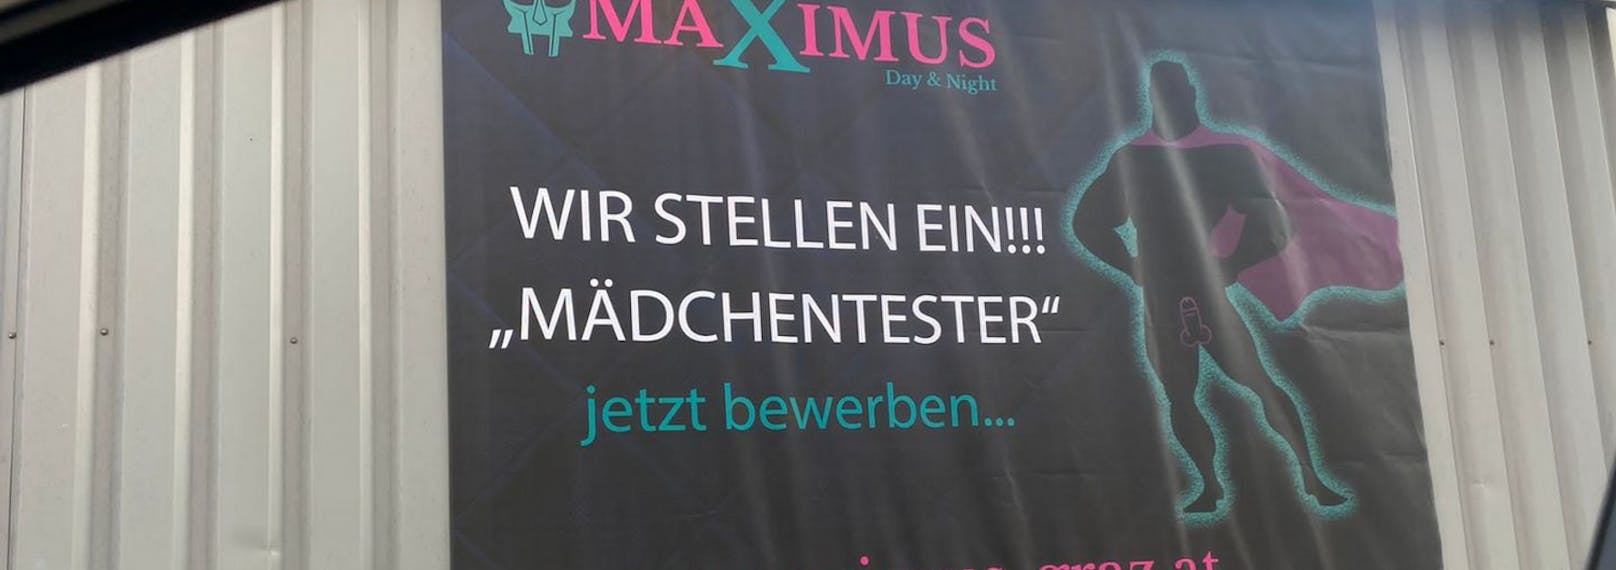 Der Frauenrat der Stadt Graz ist empört: Das Bordell Maximus sucht "Mädchentester".